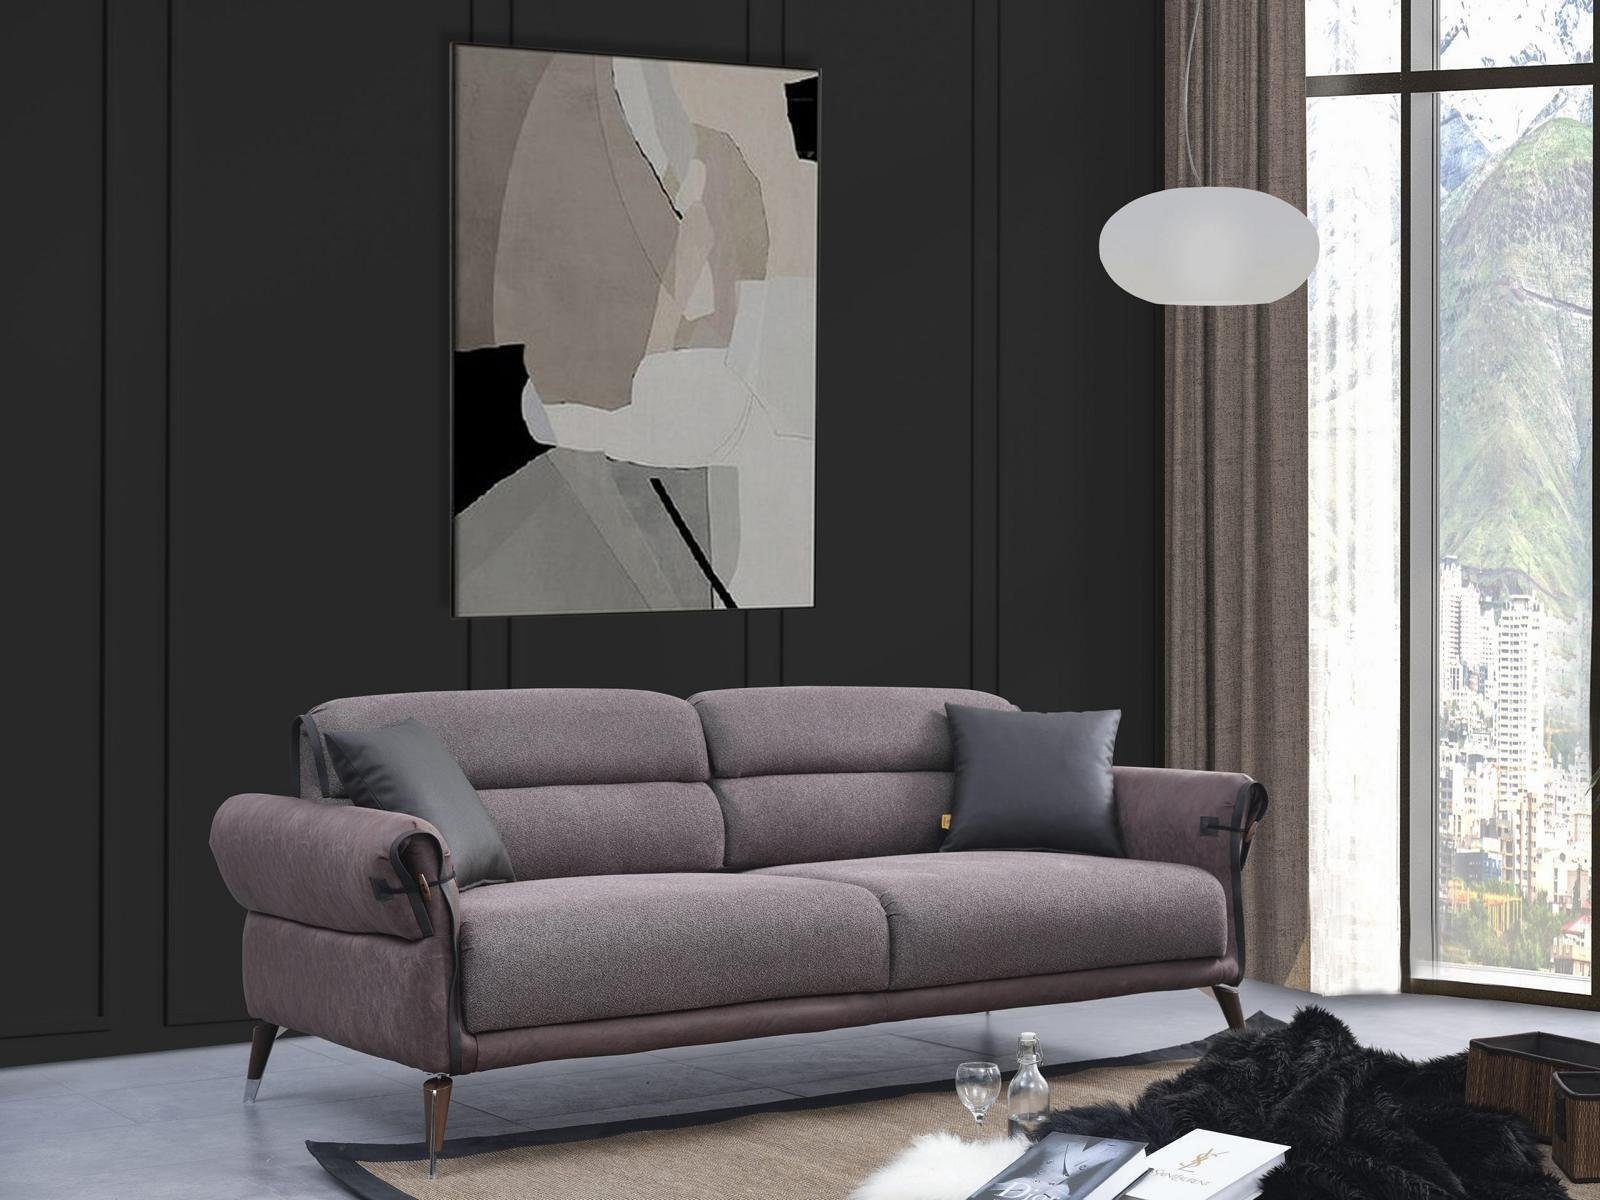 JVmoebel Sofa Wohnzimmer Sofa Couch Dreisitzer Luxus Polstermöbel Textil Möbel, 1 Teile, Made in Europa